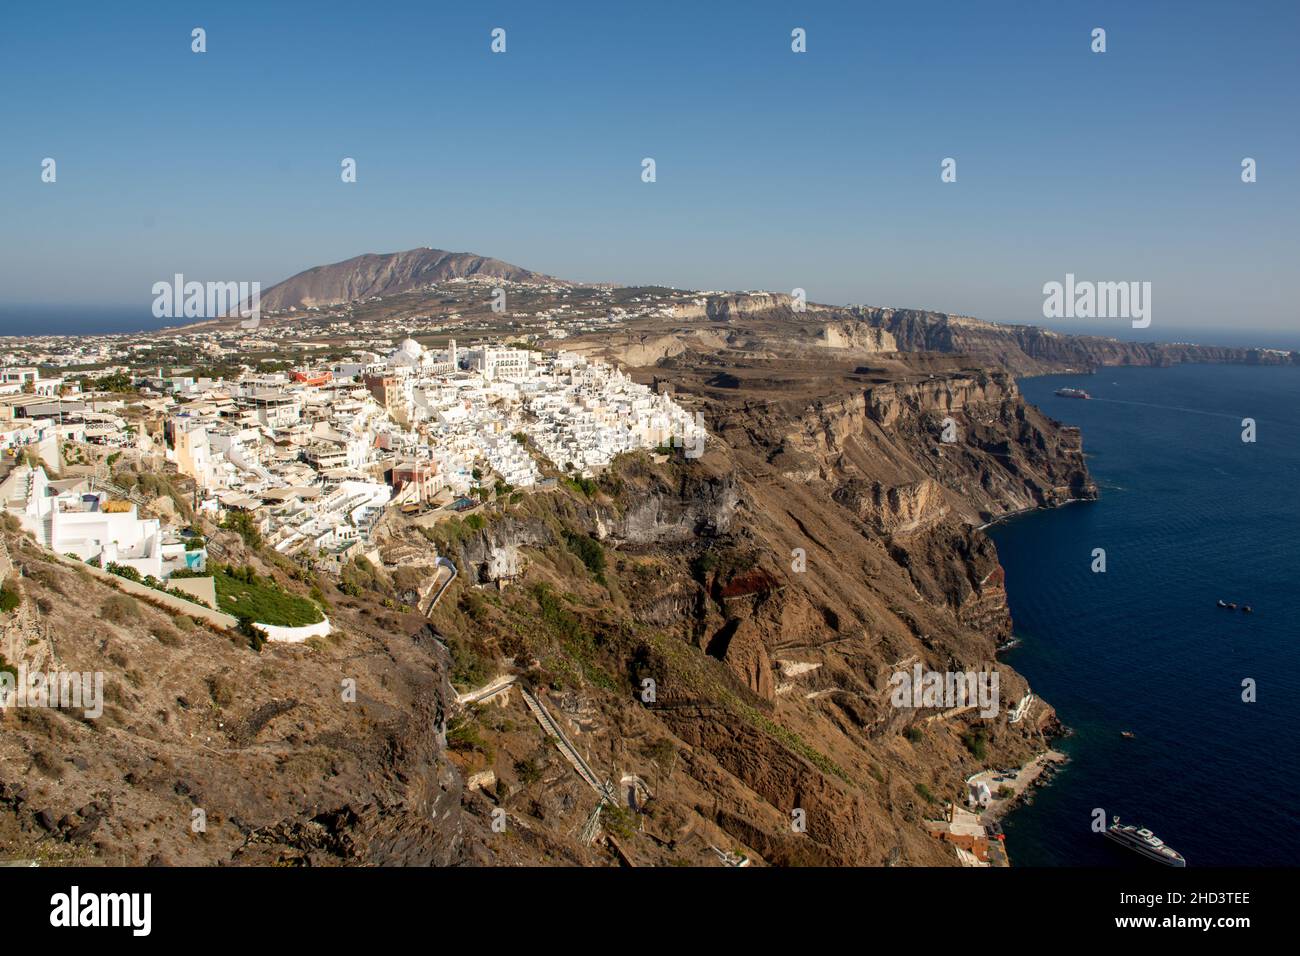 Vue de Fira sur les falaises abruptes de Santorini, Grèce Banque D'Images